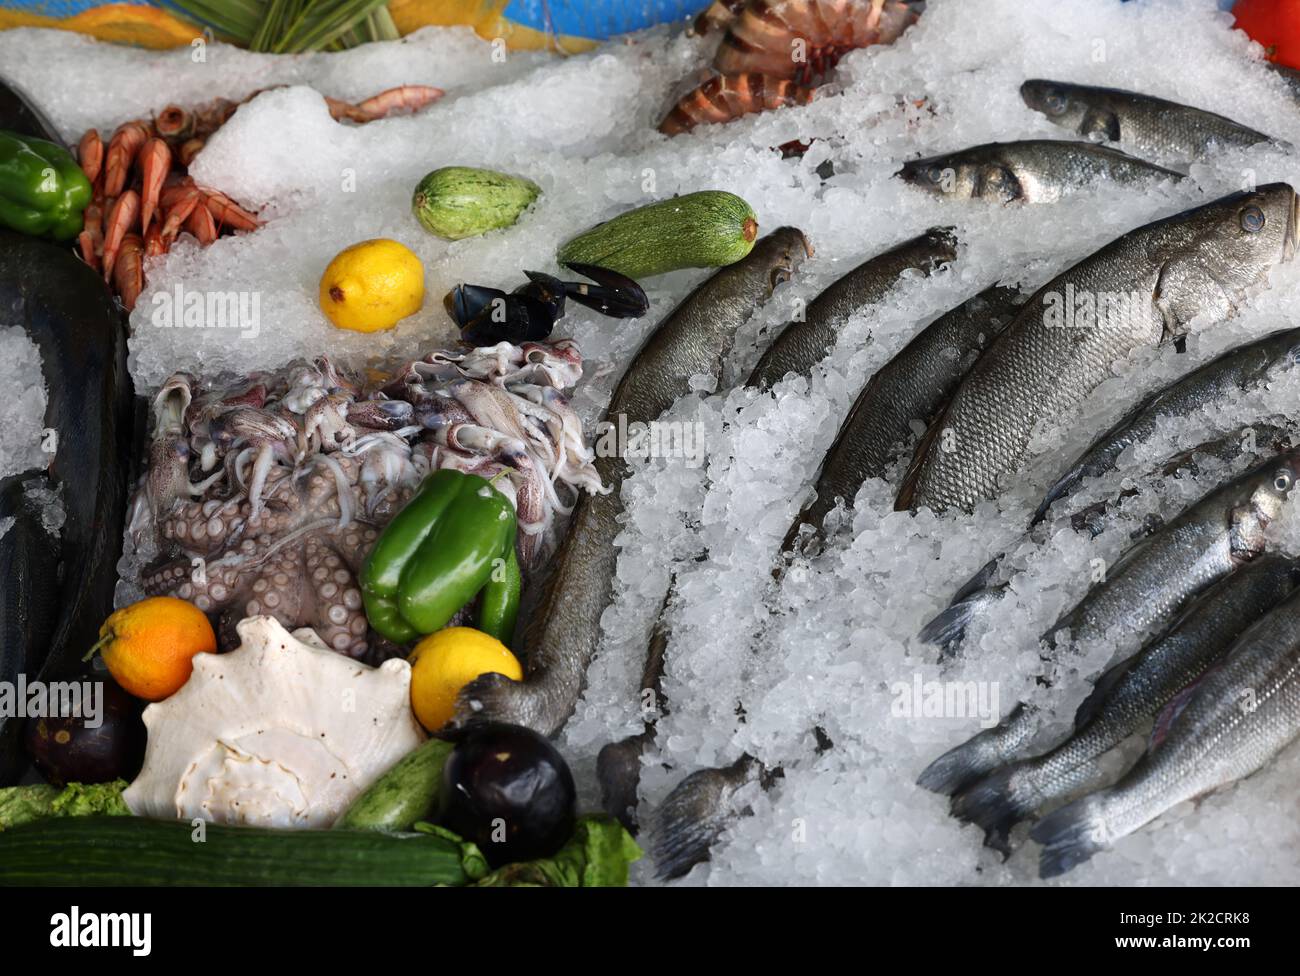 Fruits de mer frais et poissons se trouvant sur la glace dans la vitrine. Rethymno sur l'île de Crète Banque D'Images